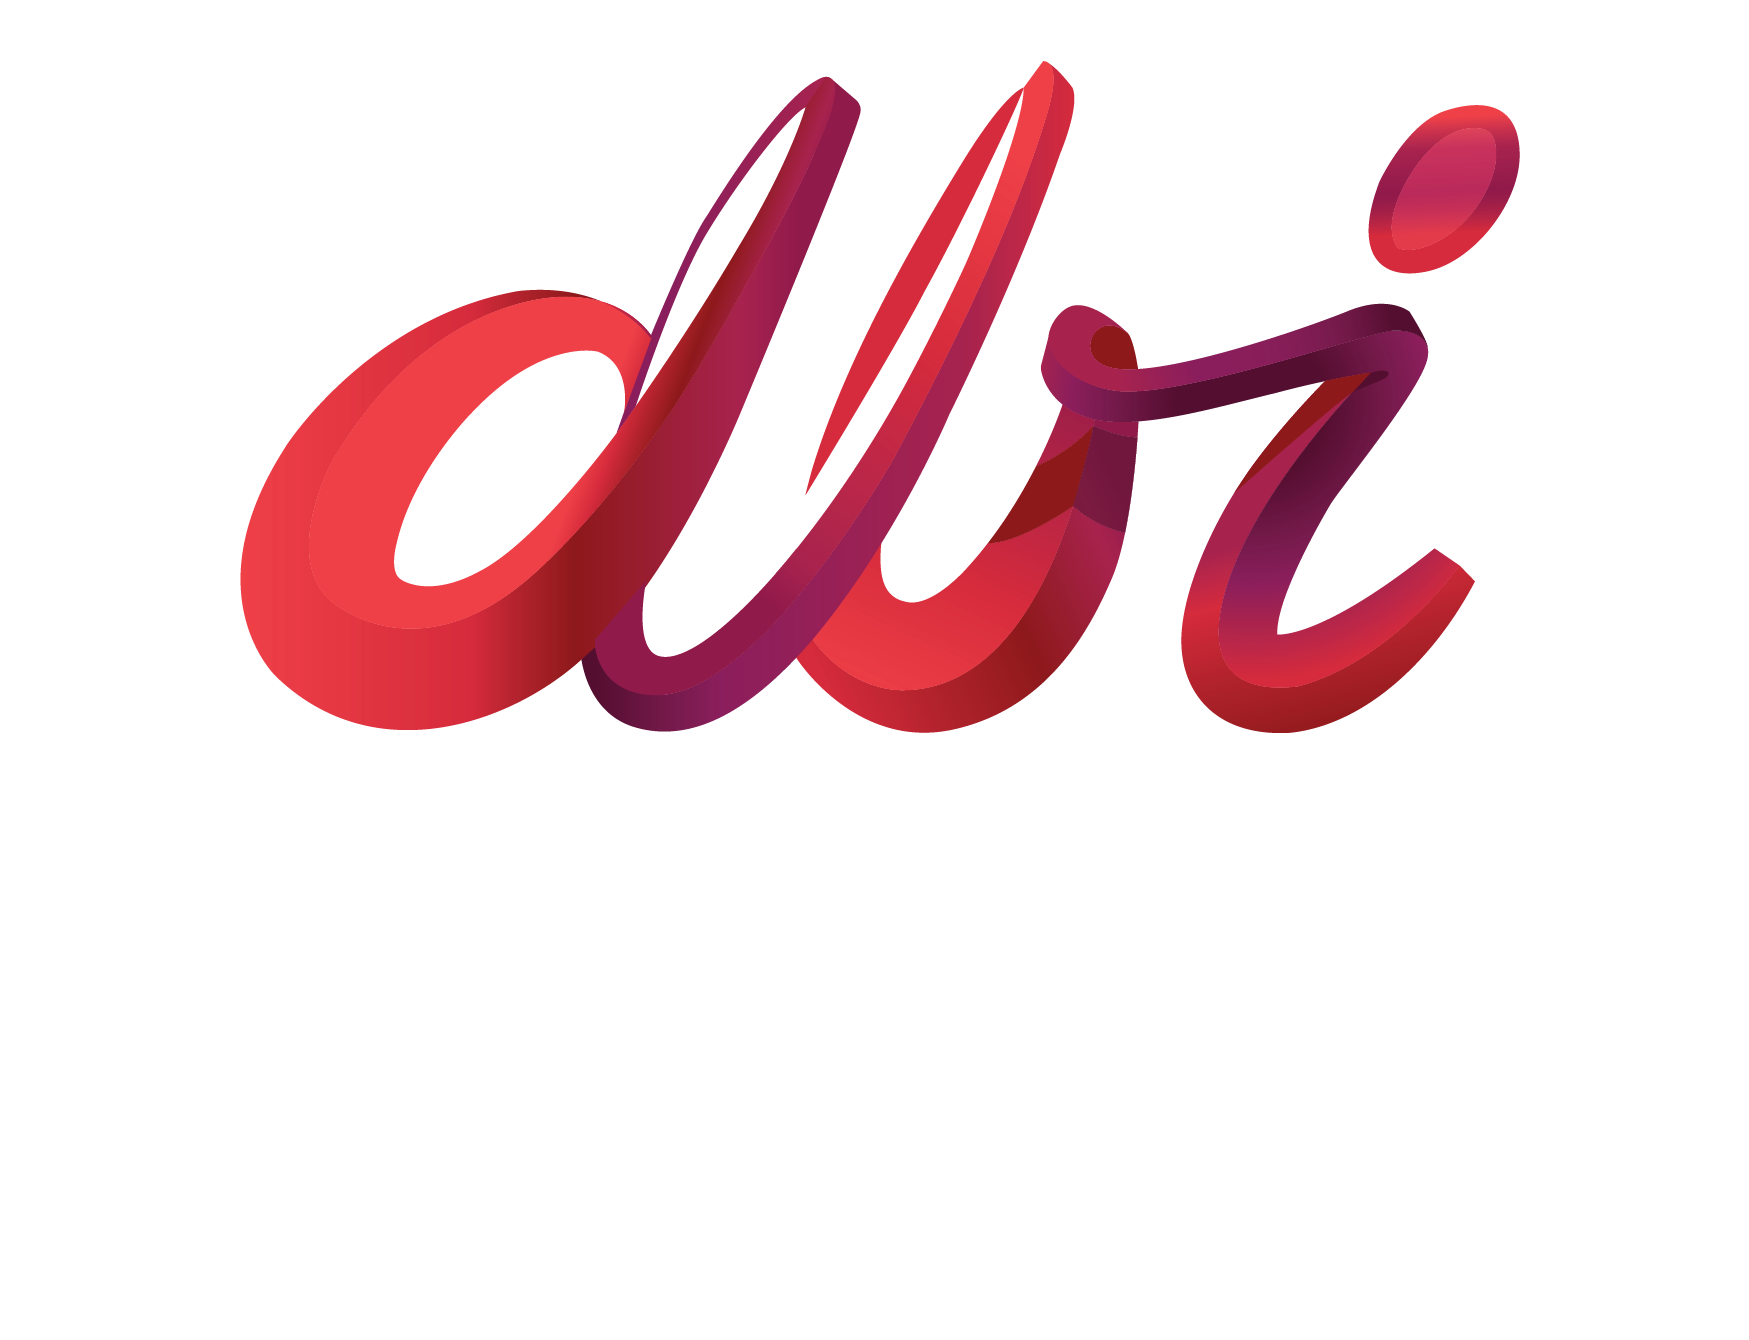 David Bloch International